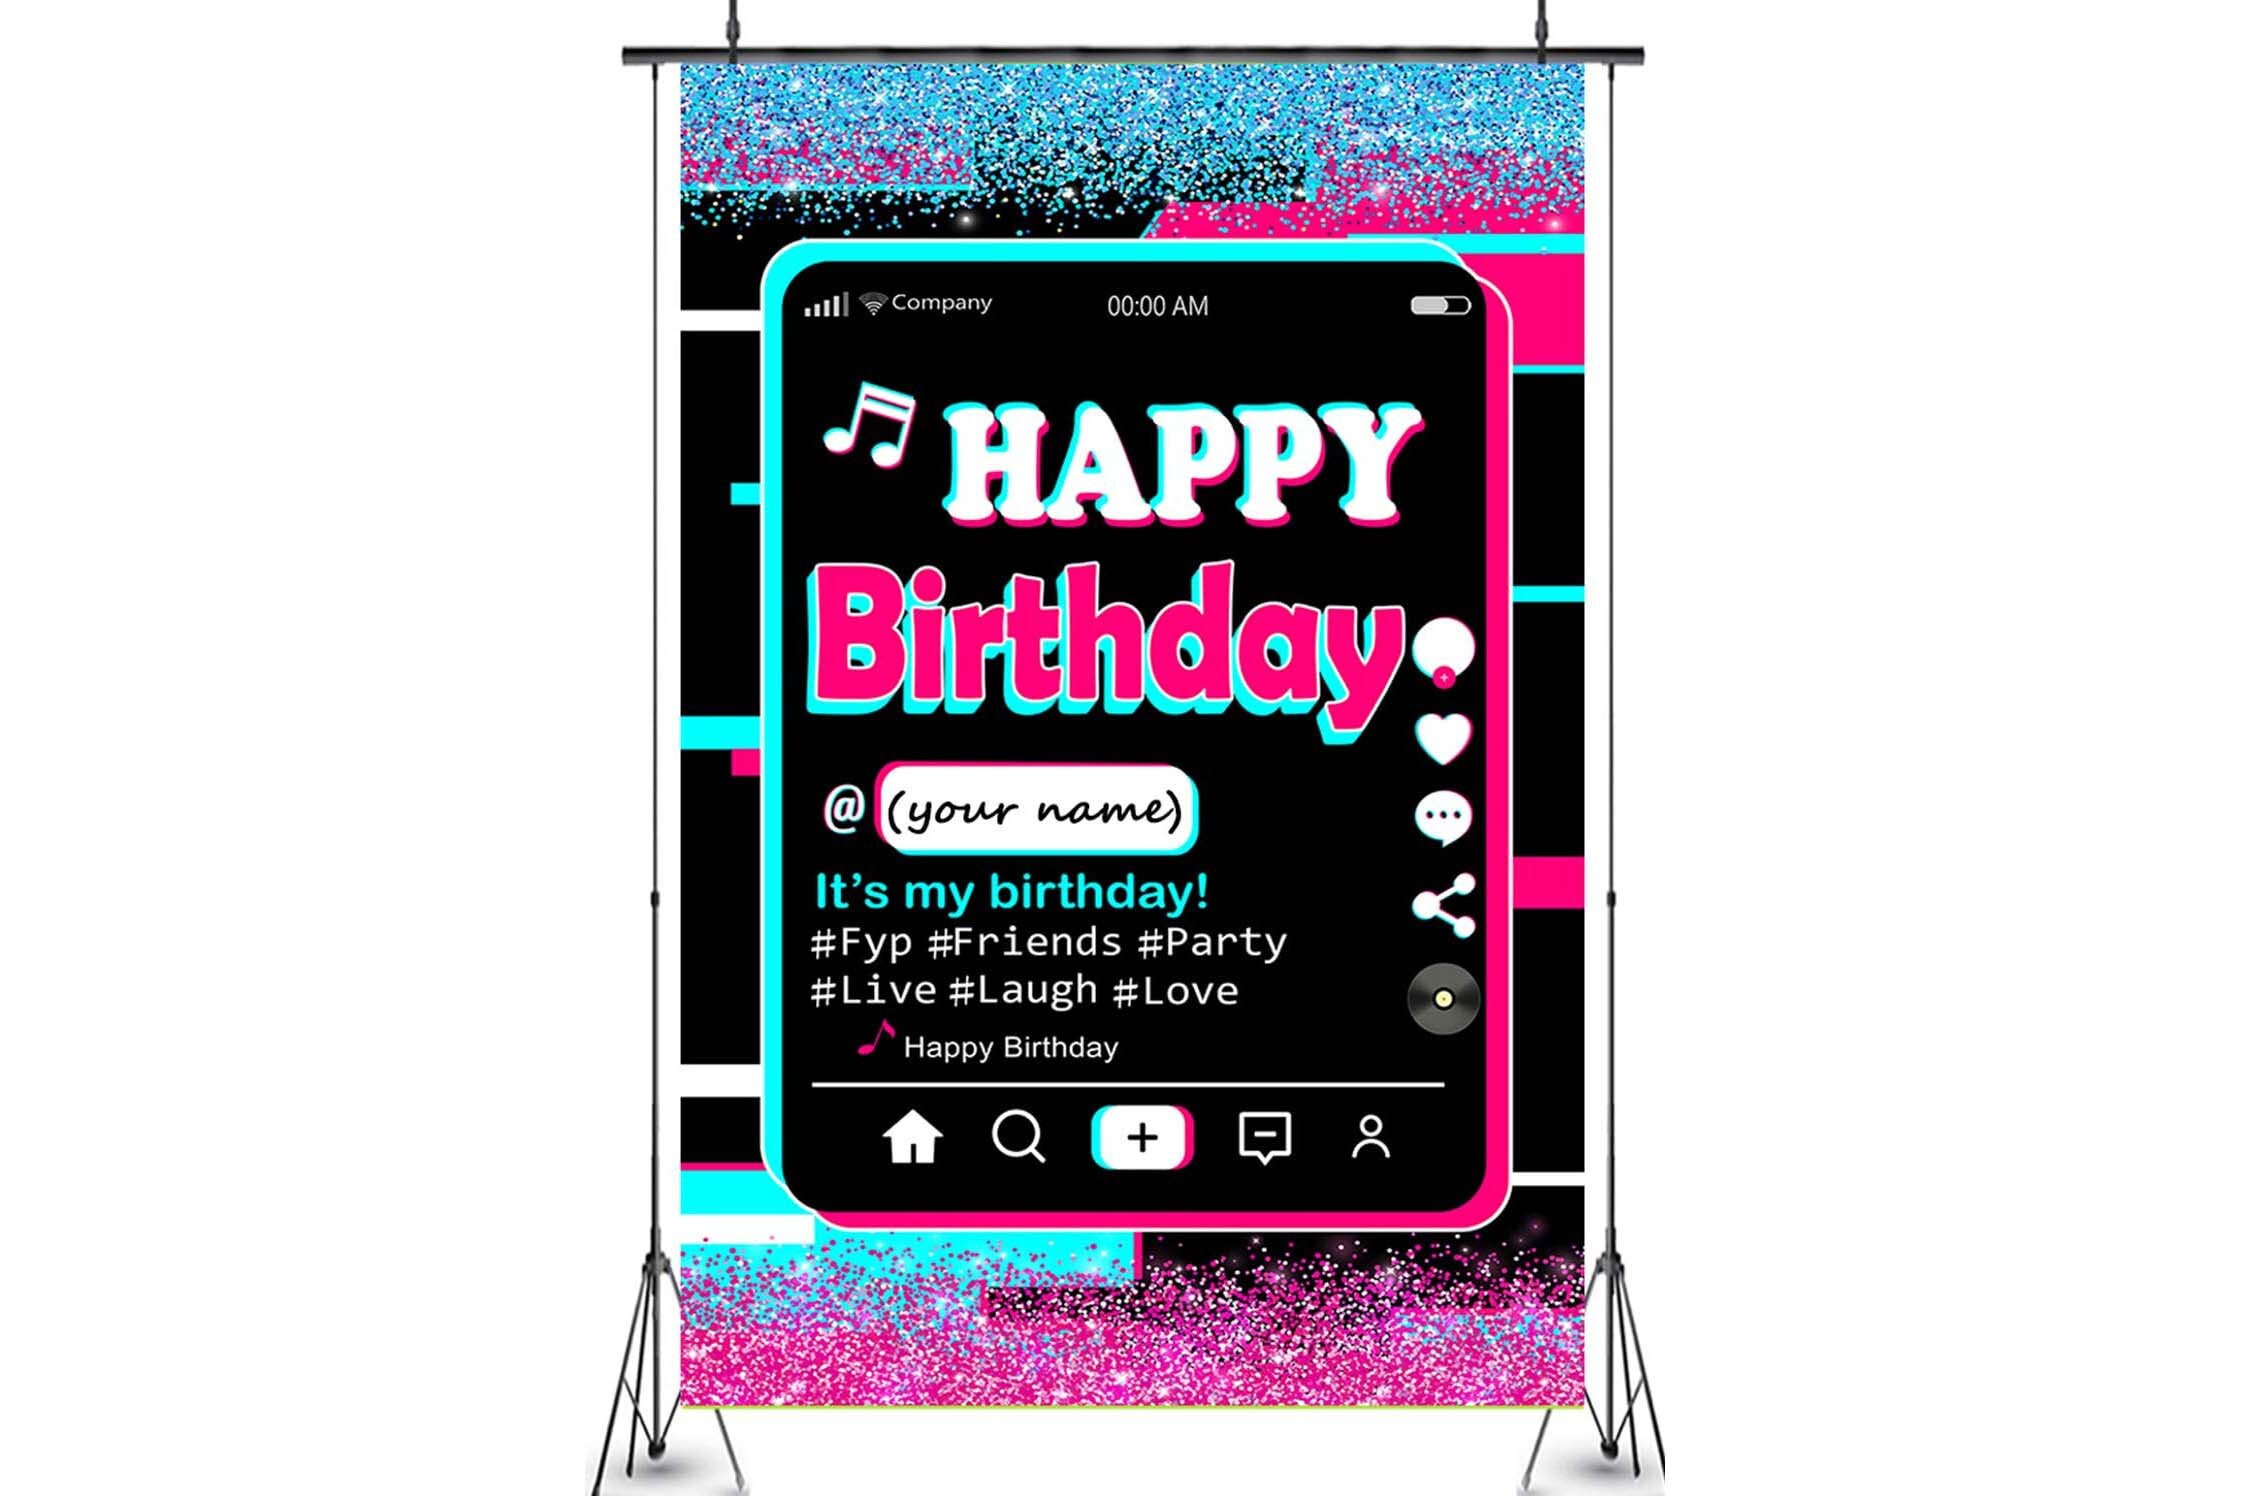 พื้นหลังงานสัมมนาวันเกิด (Birthday party backdrop): Khám phá hình ảnh đẹp và sáng tạo về พื้นหลังงานสัมมนาวันเกิด để tạo ra một bữa tiệc sinh nhật đáng nhớ cho người thân của bạn.